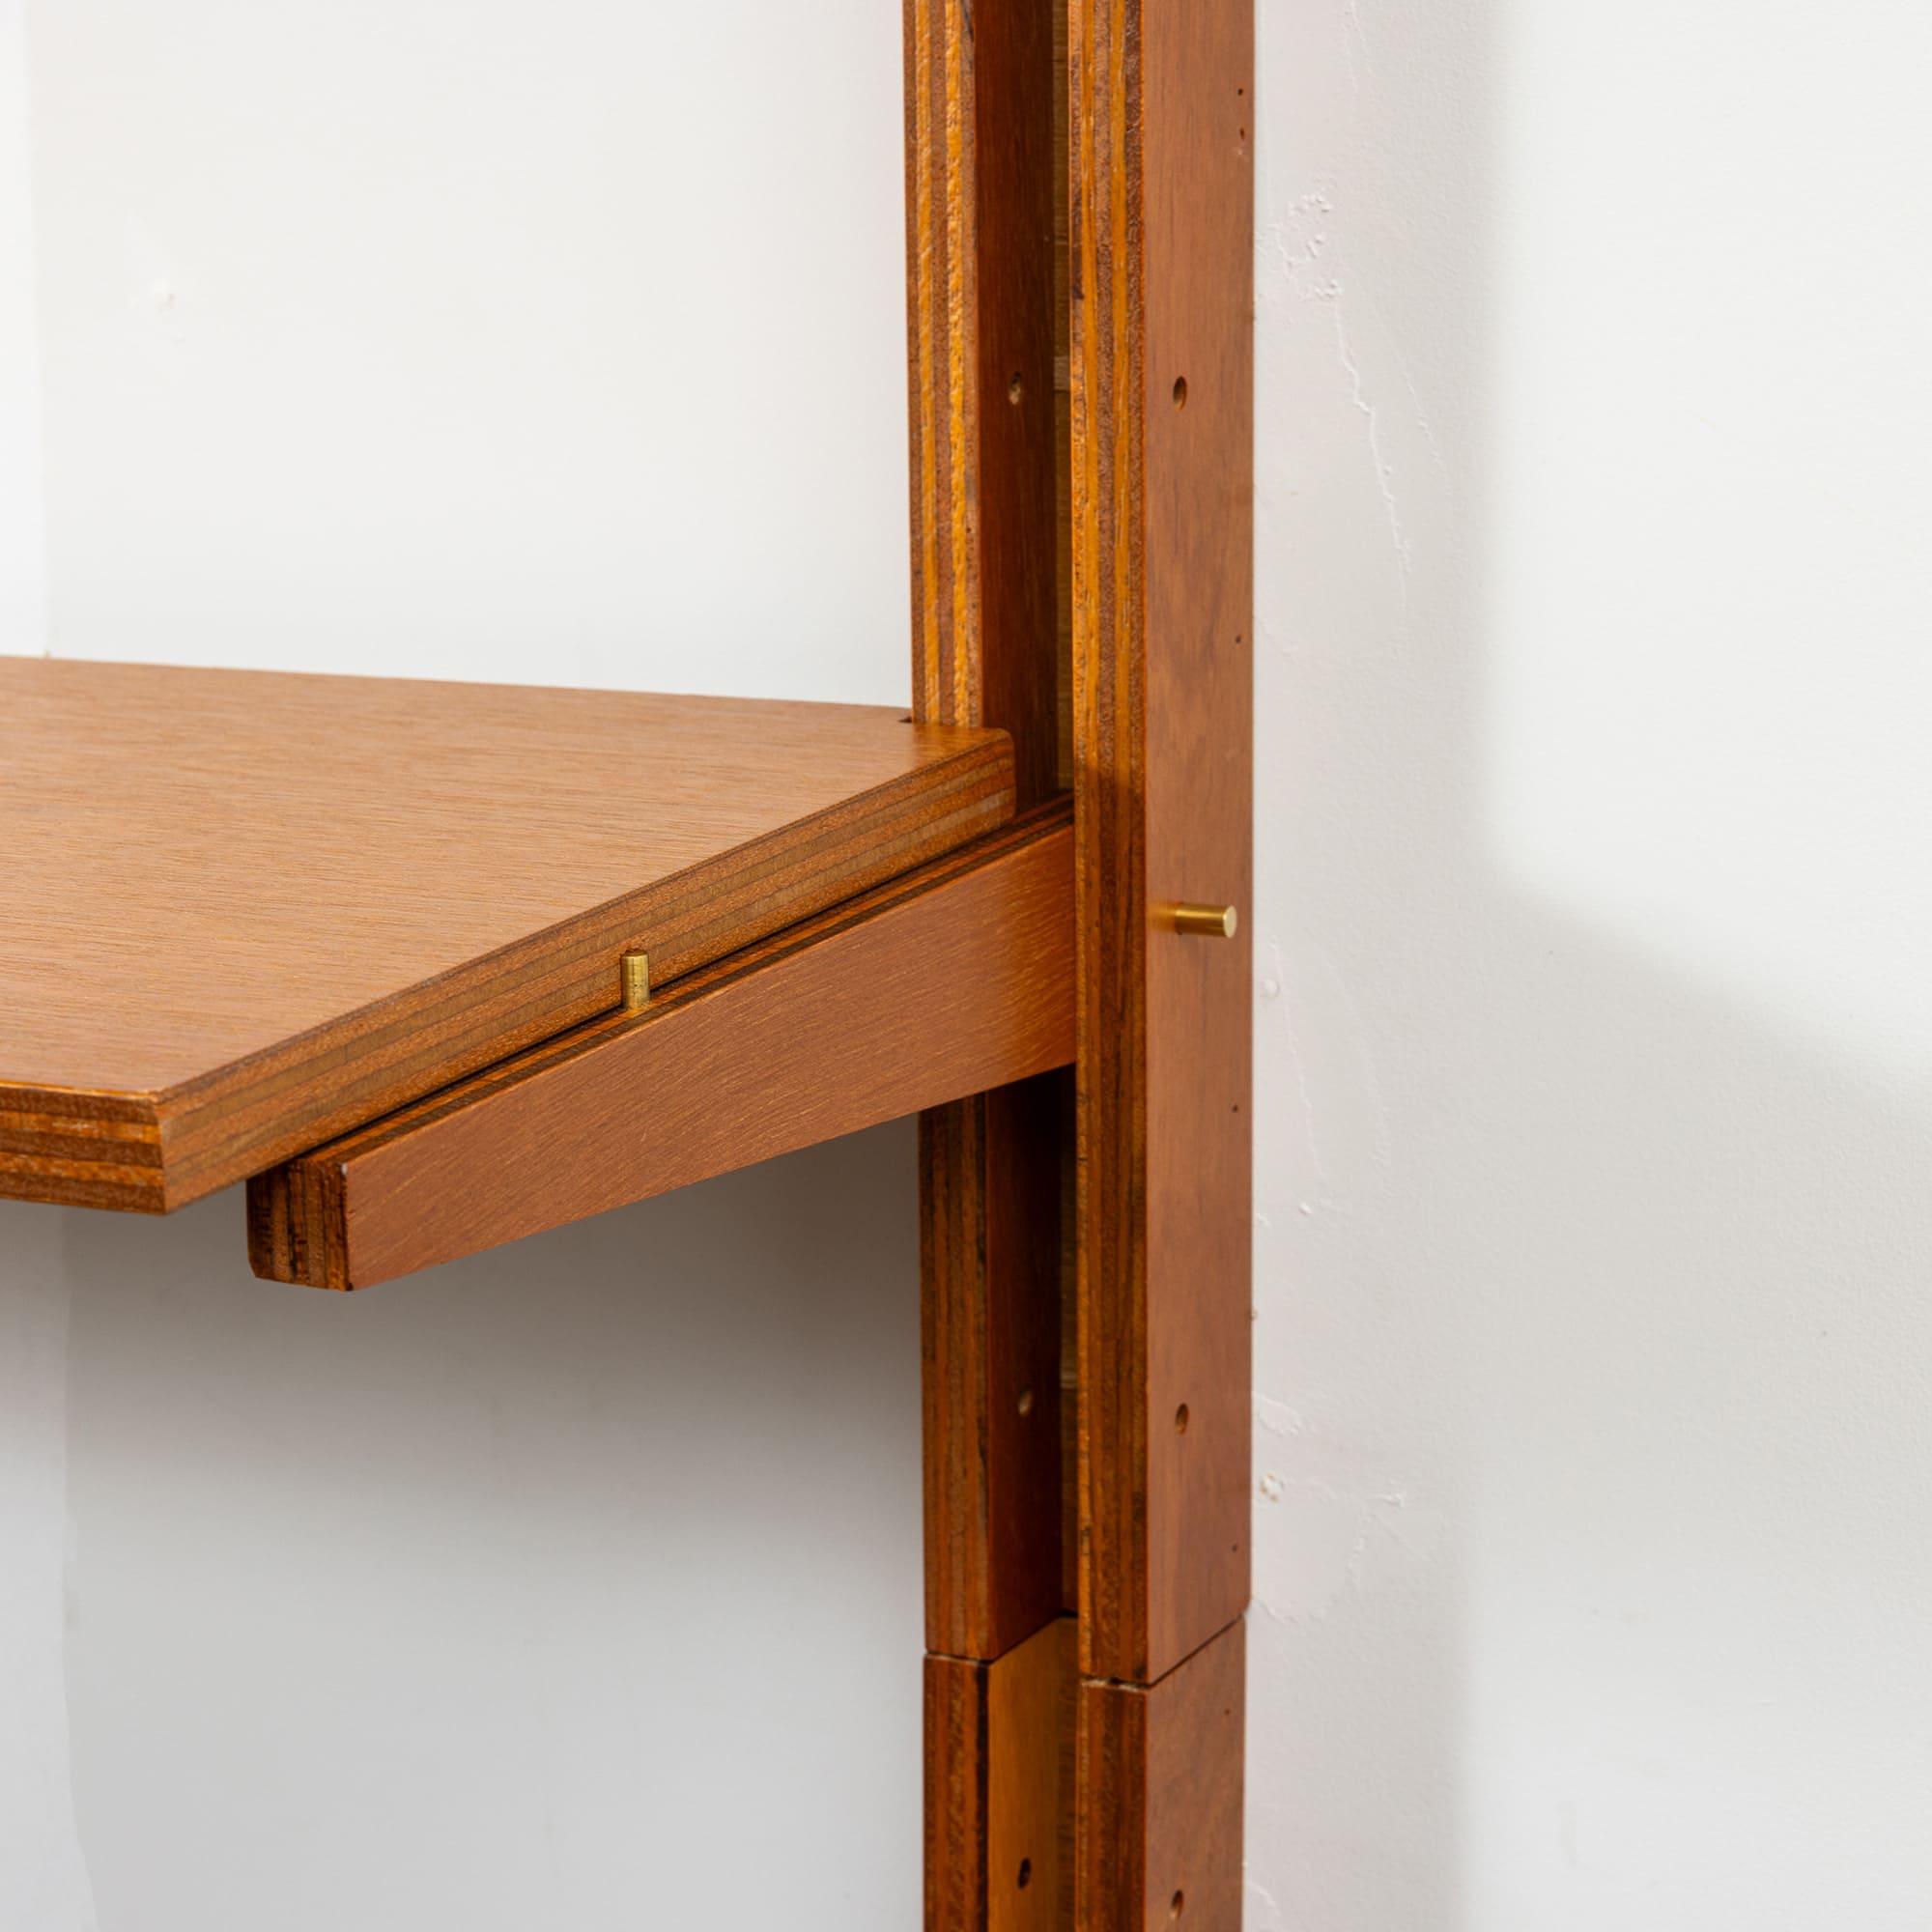 木製シェルビング 棚板 W900 PS-BK009-07-G289 棚板は、ブラケットに対して半掛かりで設置します